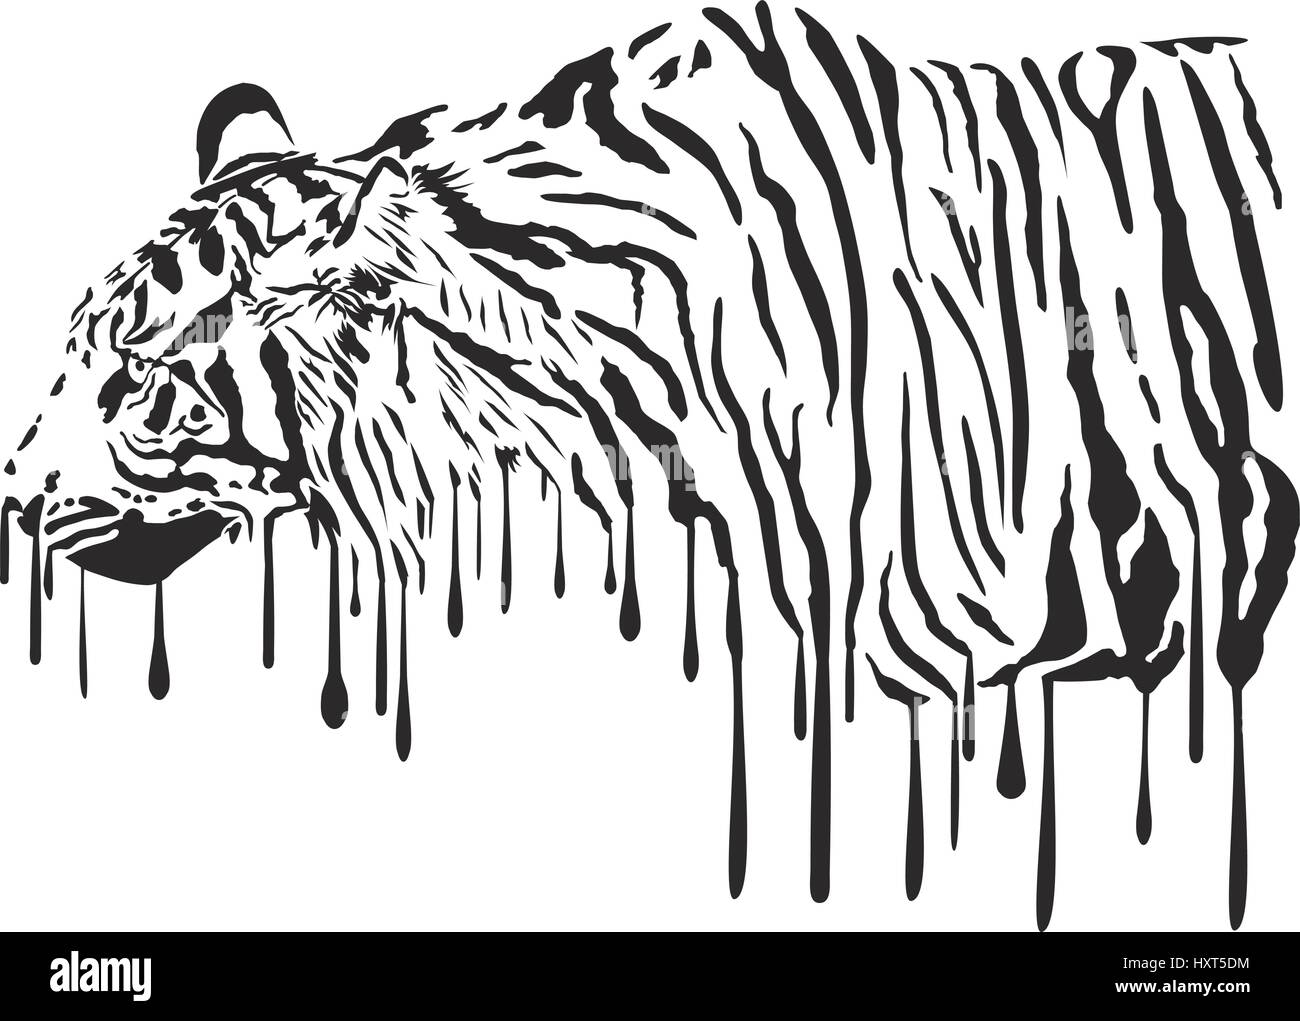 Tiger, la peinture abstraite sur fond blanc Illustration de Vecteur